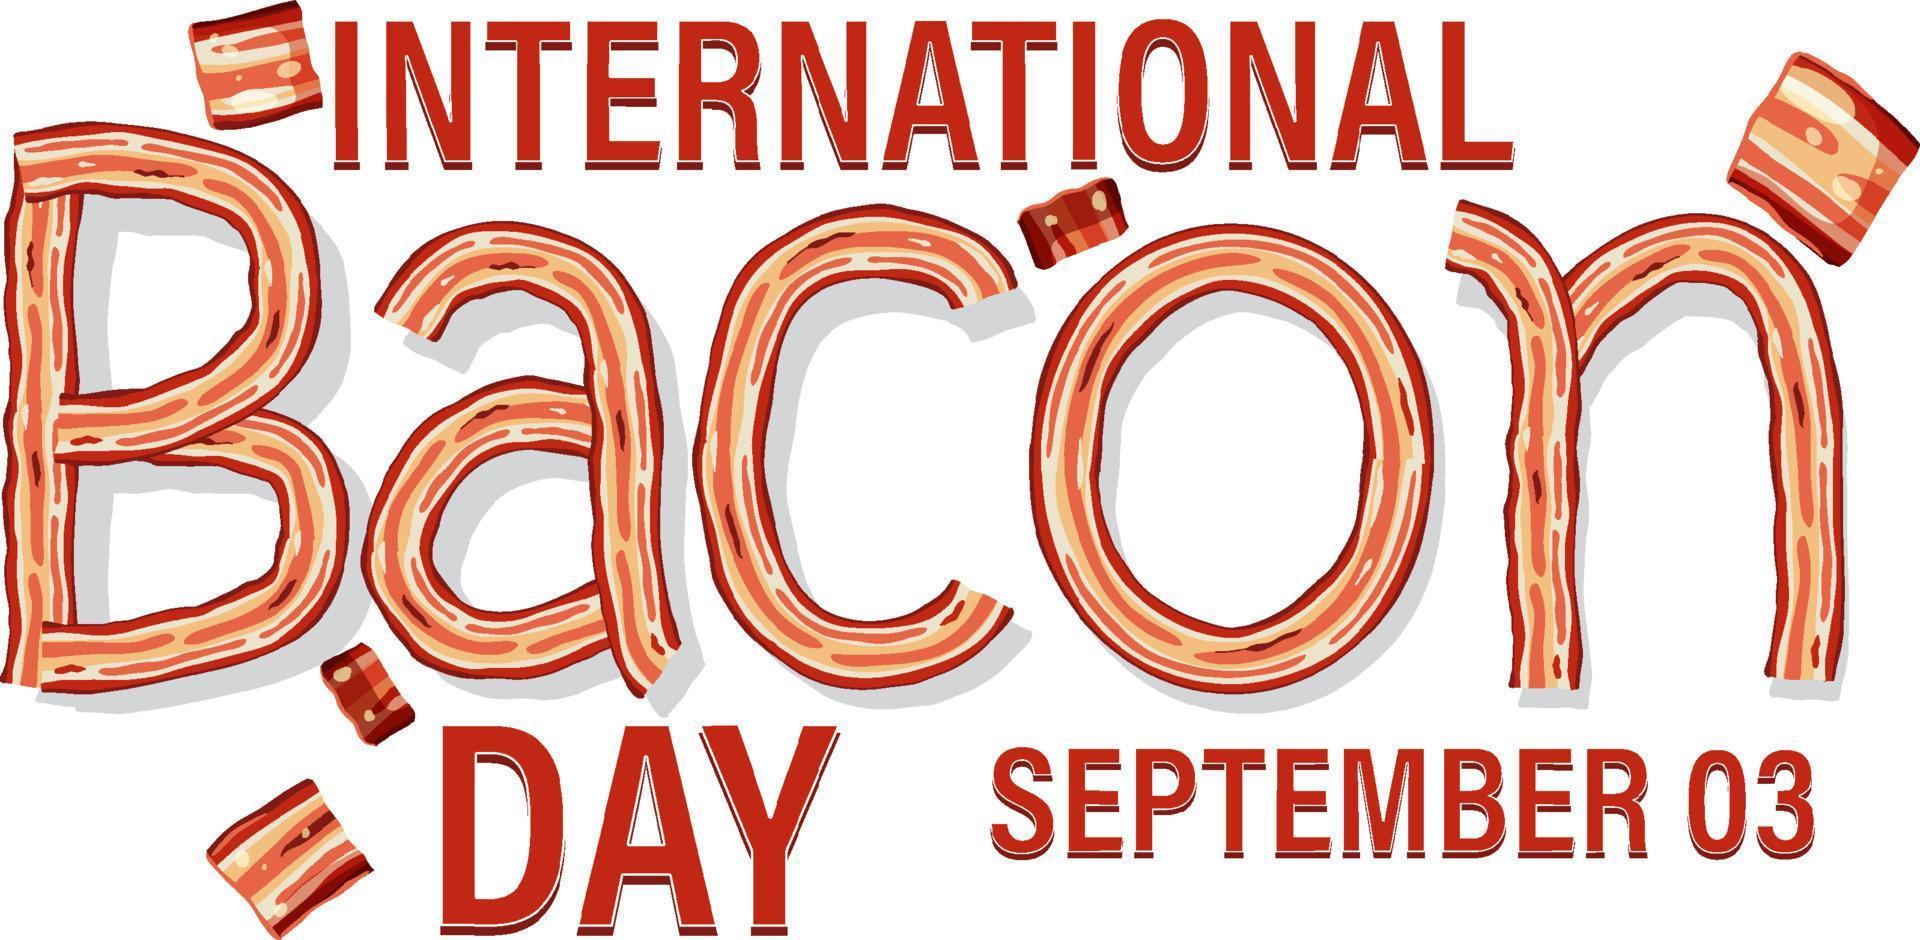 internationella bacondagen affischmall vektor